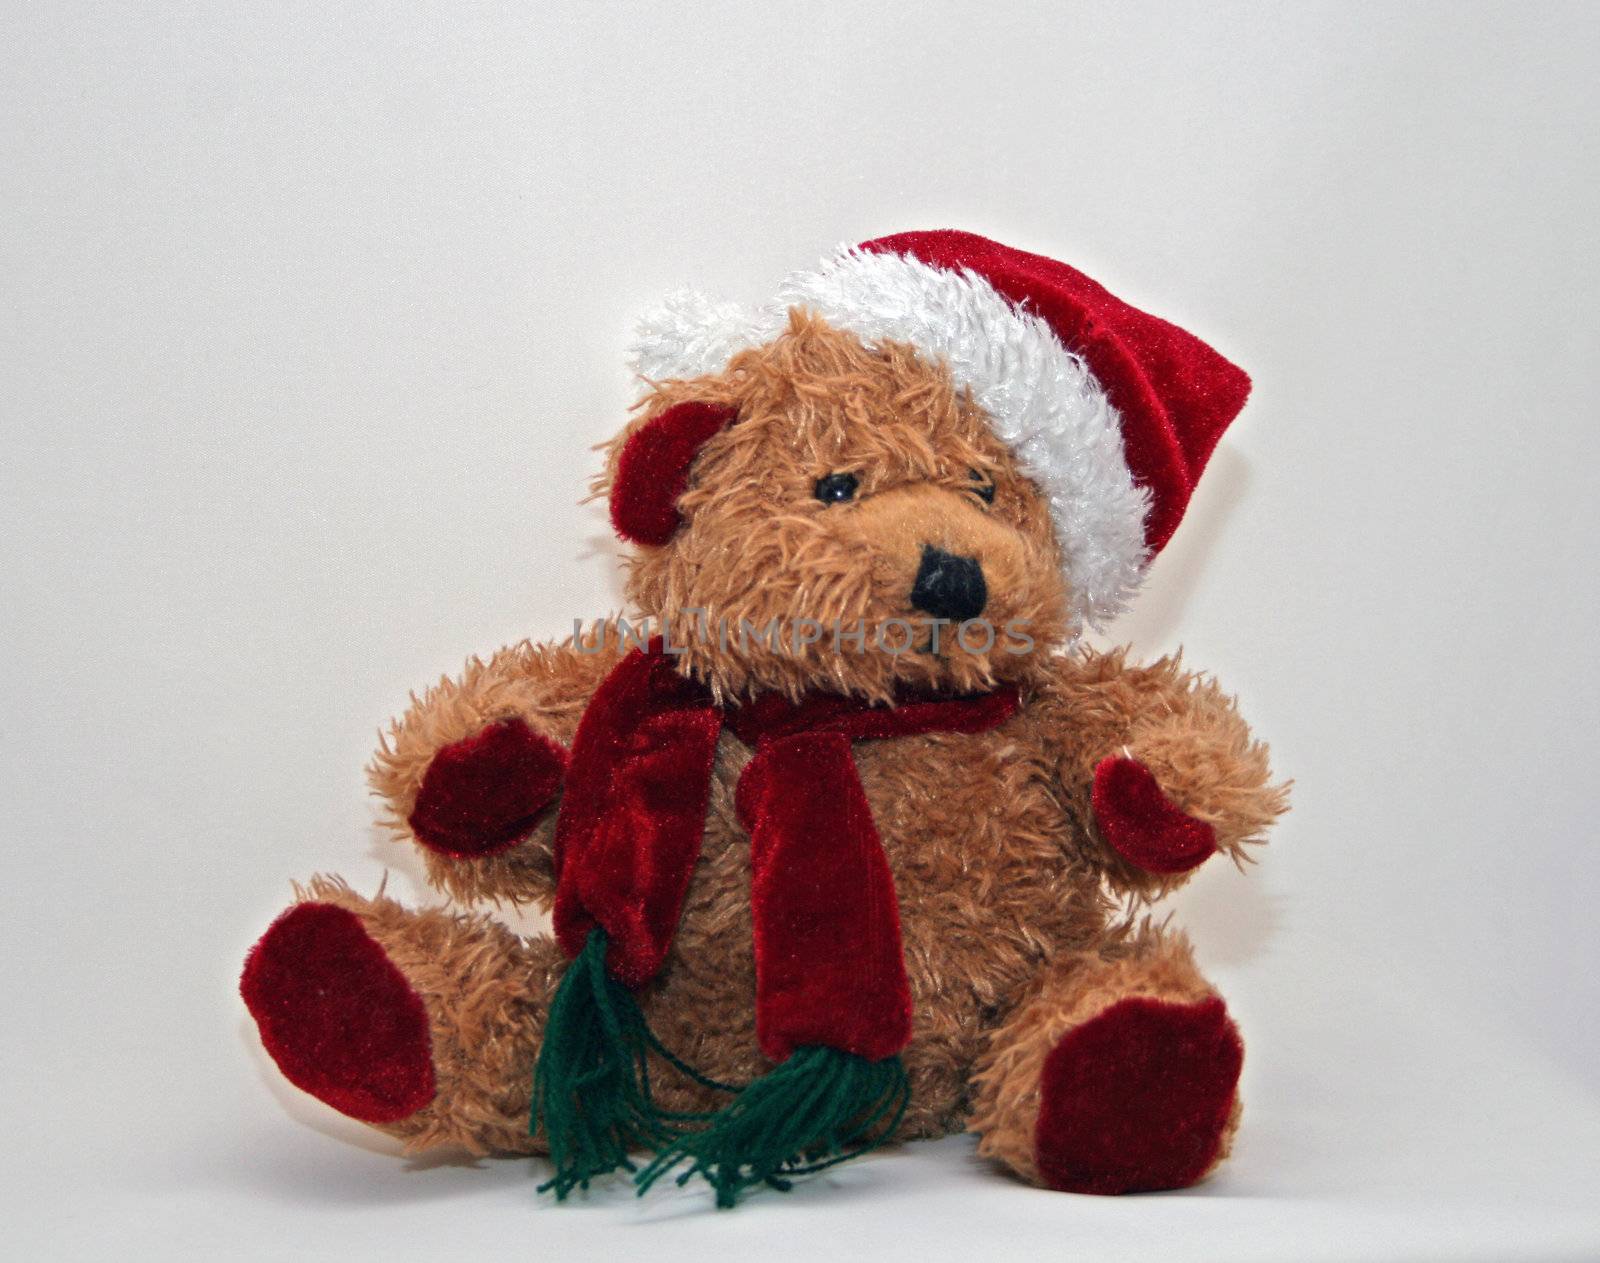 Christmas Teddy by NathalieM